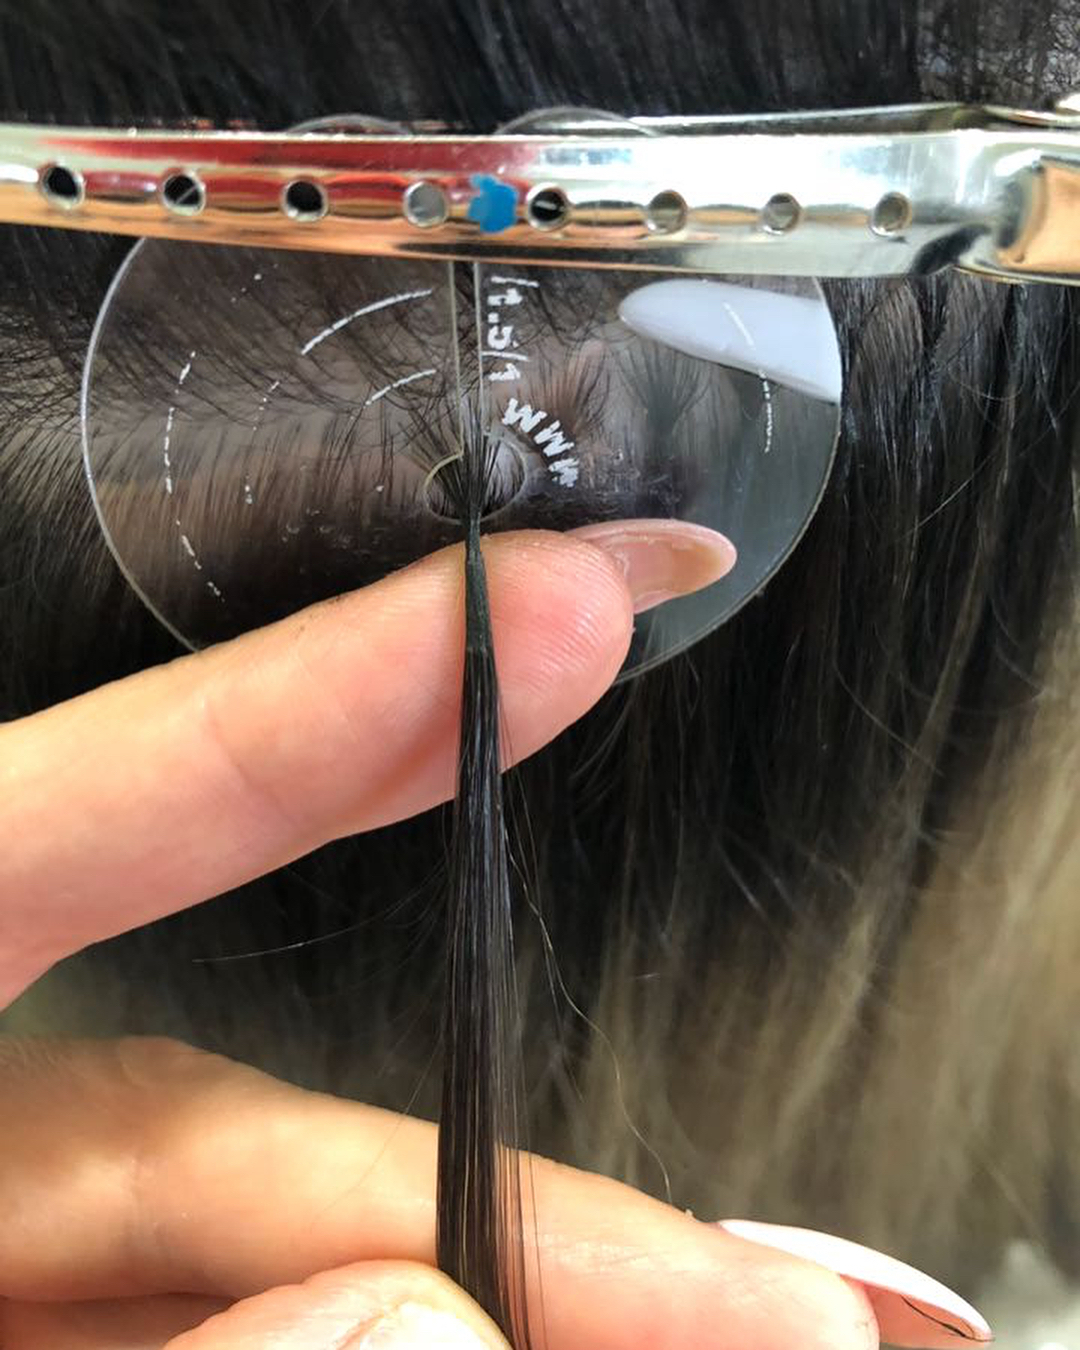 Наращивание волос капсулами: сколько нужно капсул, холодное и горячее наращивание, технология с натуральными волосами и кератиновыми капсулами, волосы после, схема,